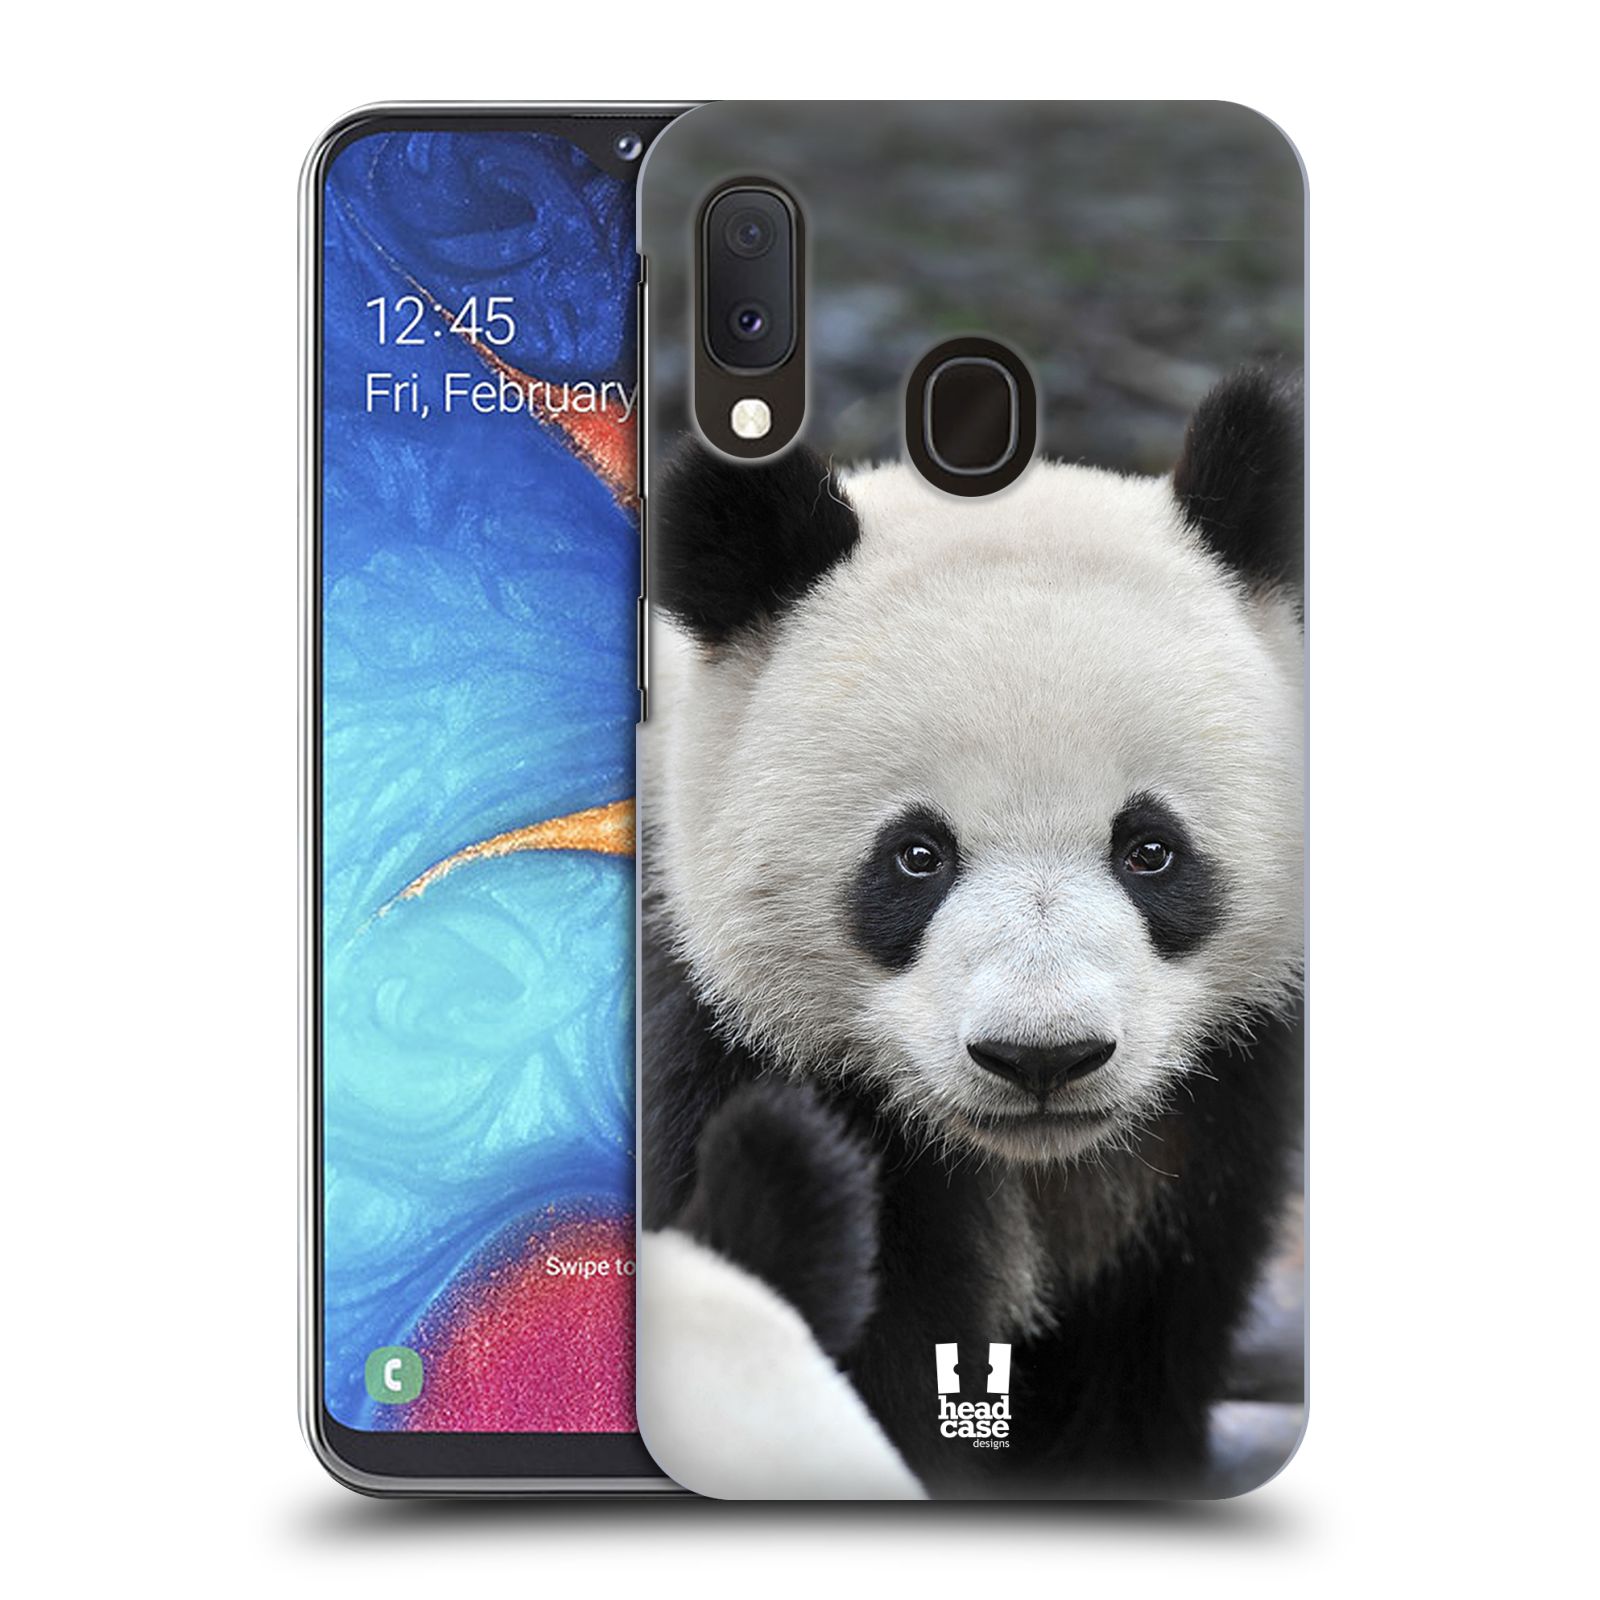 Zadní obal pro mobil Samsung Galaxy A20E - HEAD CASE - Svět zvířat medvěd panda